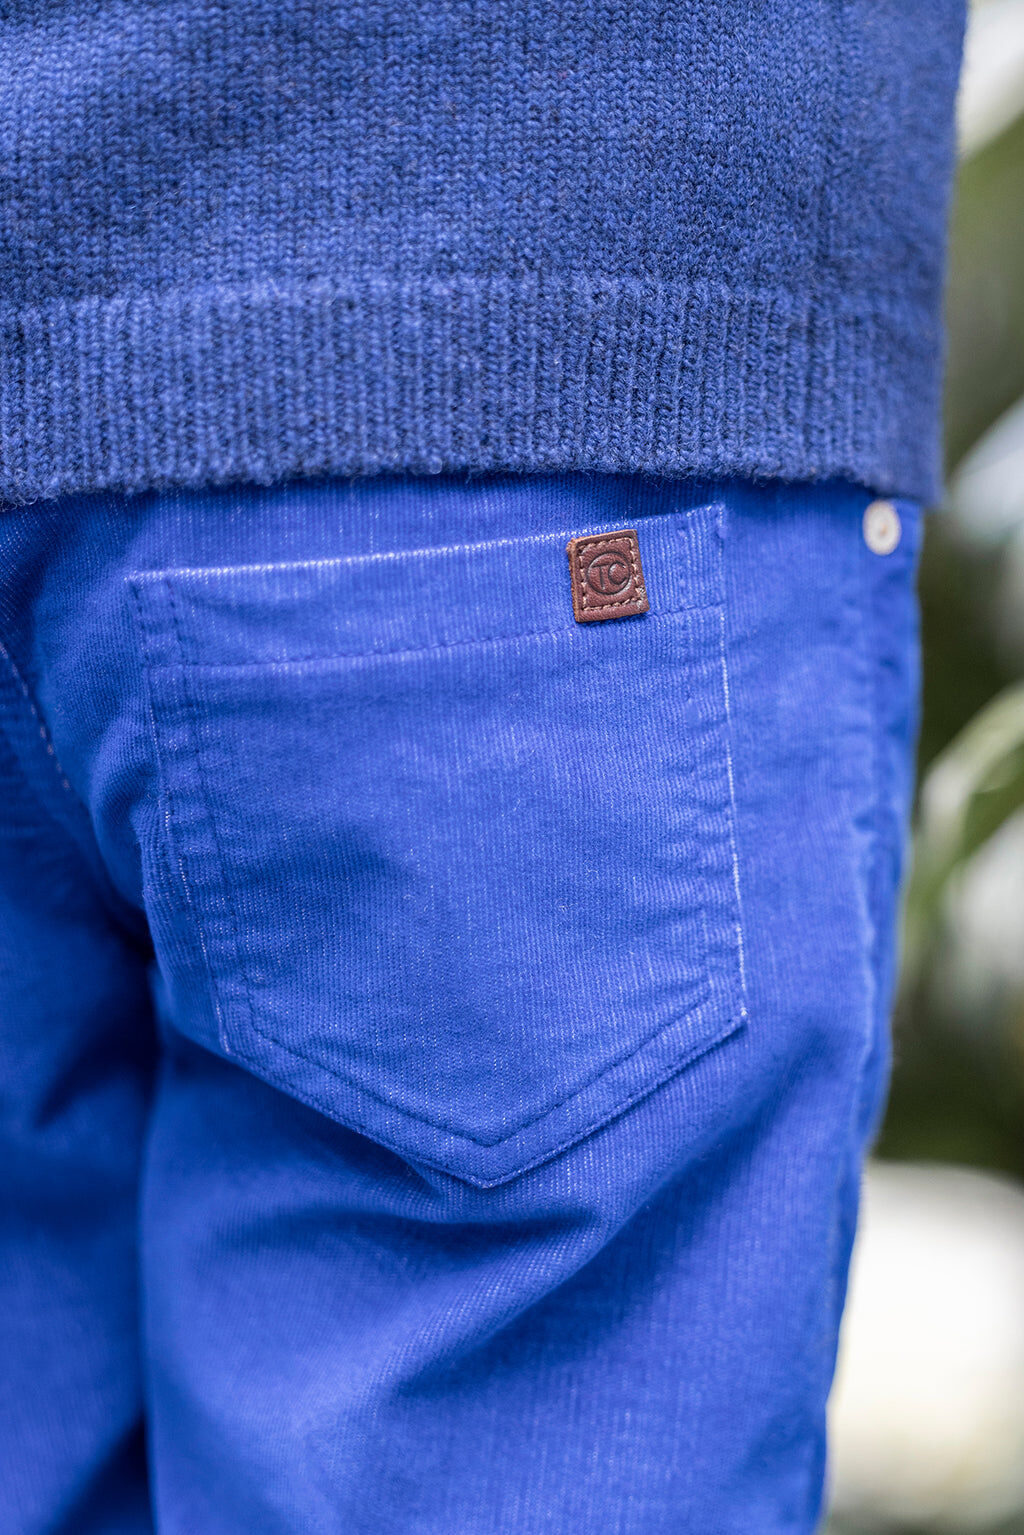 Pantalon - Velours côtelé milleraies bleu roi